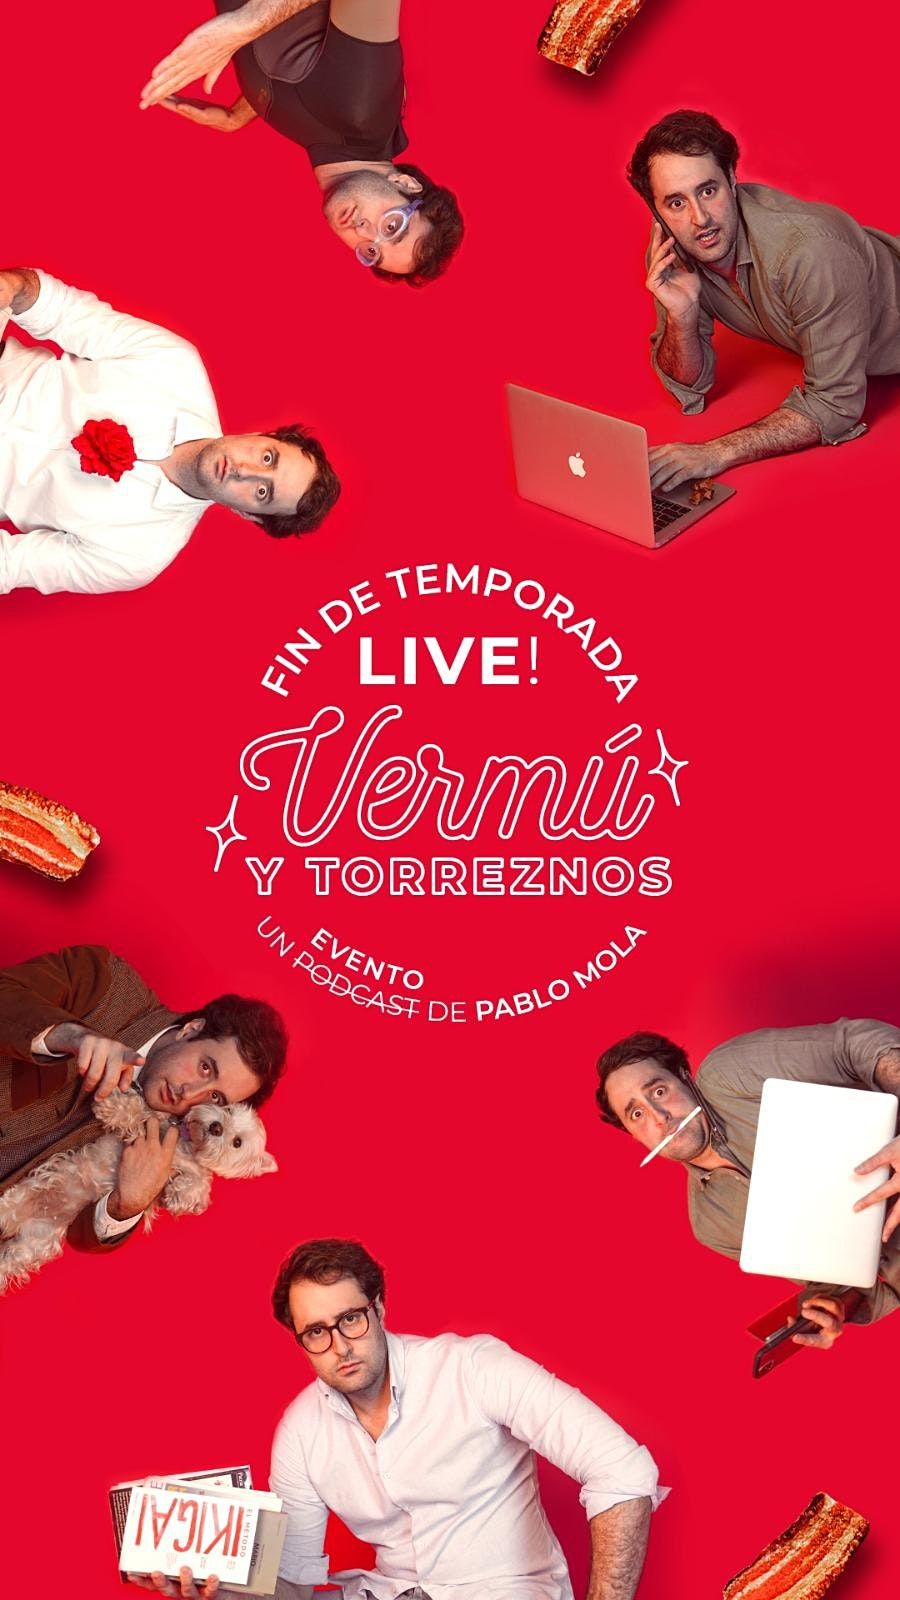 Verm\u00fa y Torreznos: Final de temporada Live!